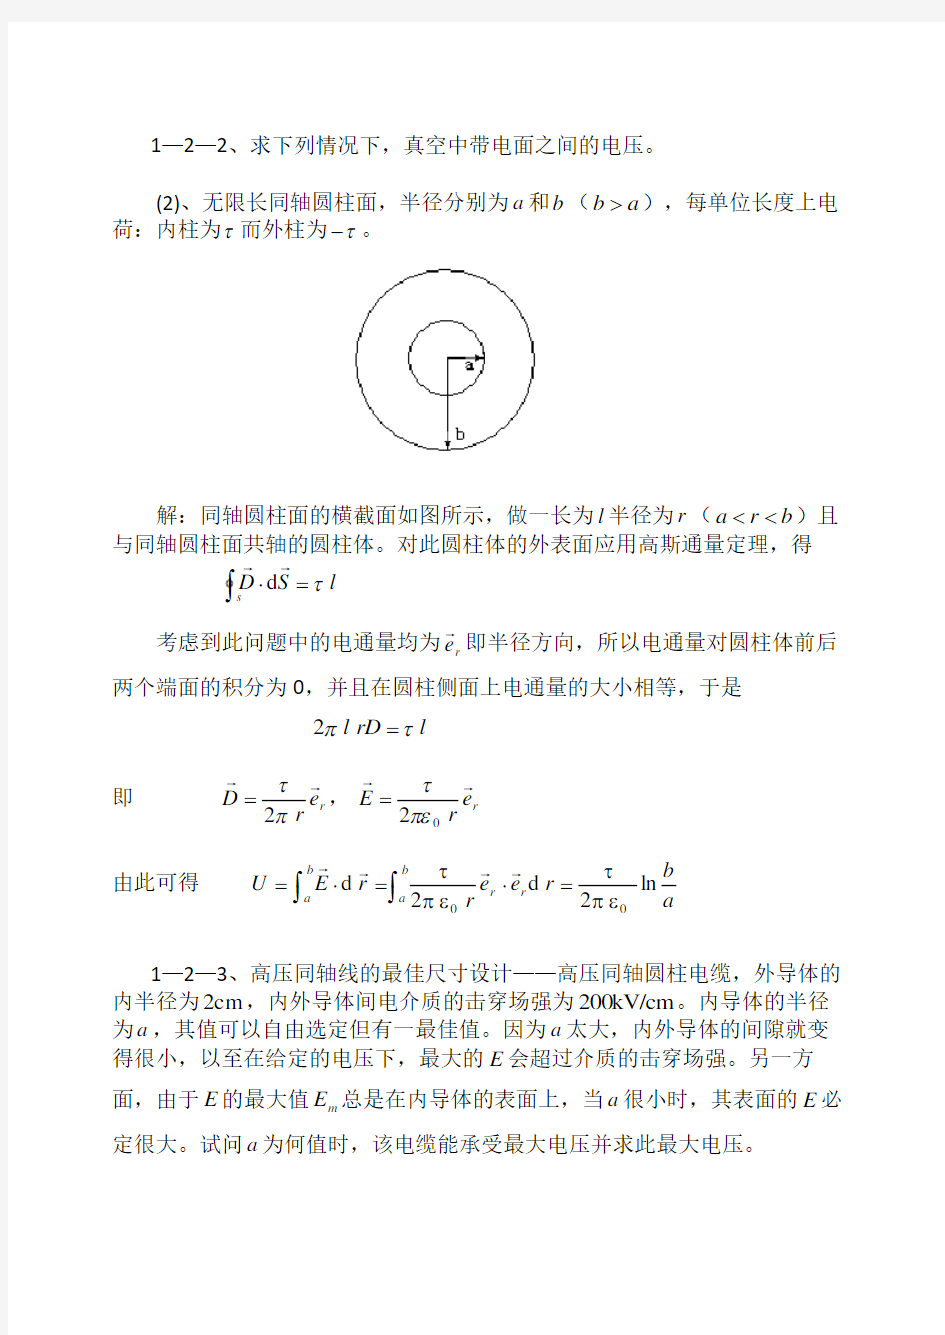 冯慈璋马西奎工程电磁场导论课后重点习题解答